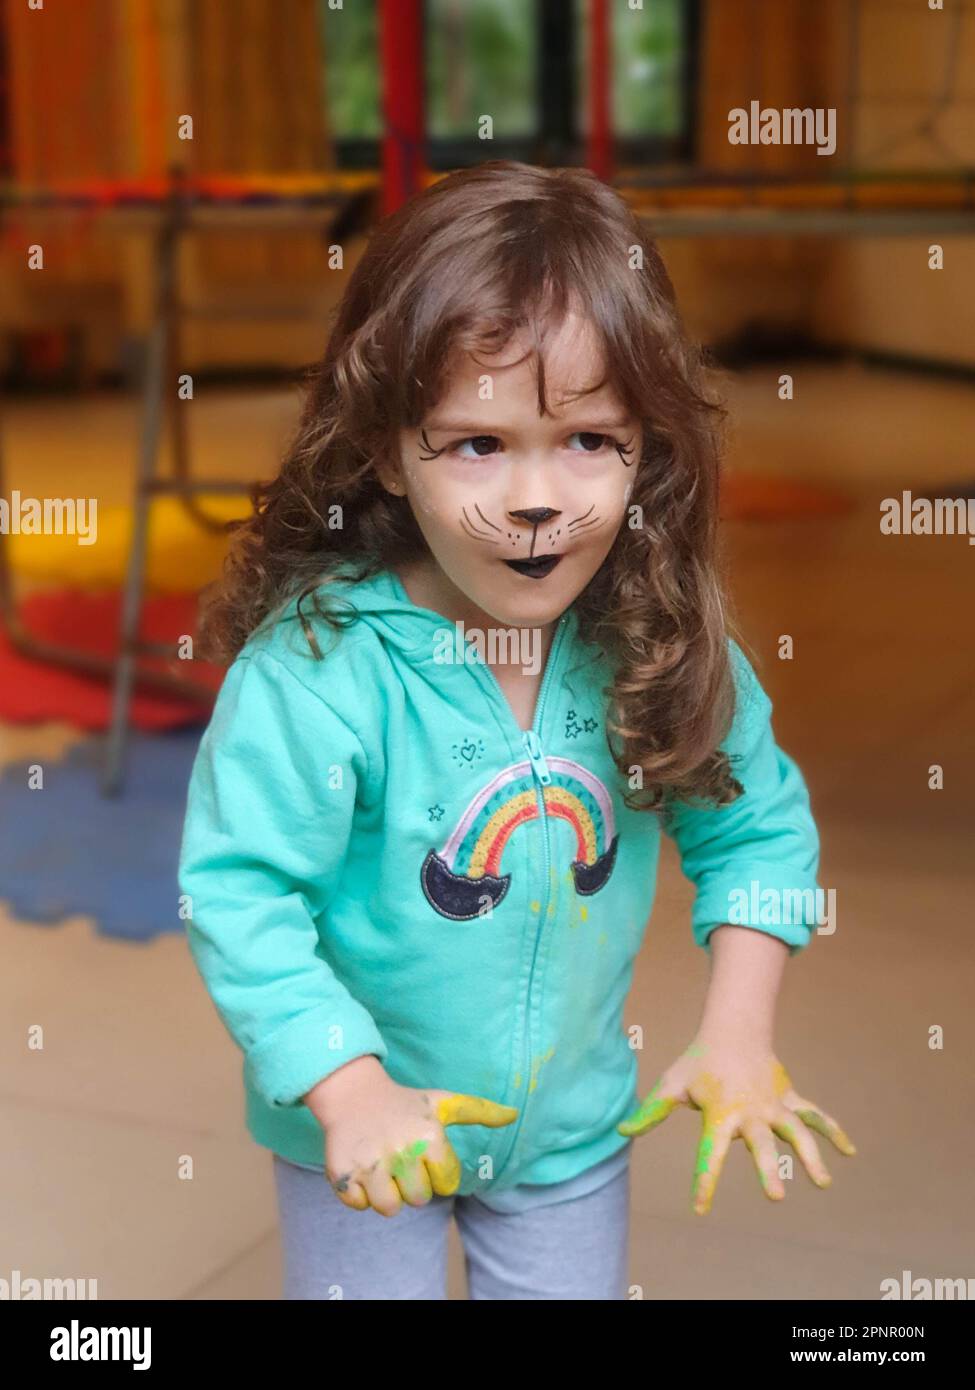 Ein Mädchen mit Hundegesicht und dreckiger Farbe, bedeckte Hände, die in einem Kinderzimmer rummachen Stockfoto